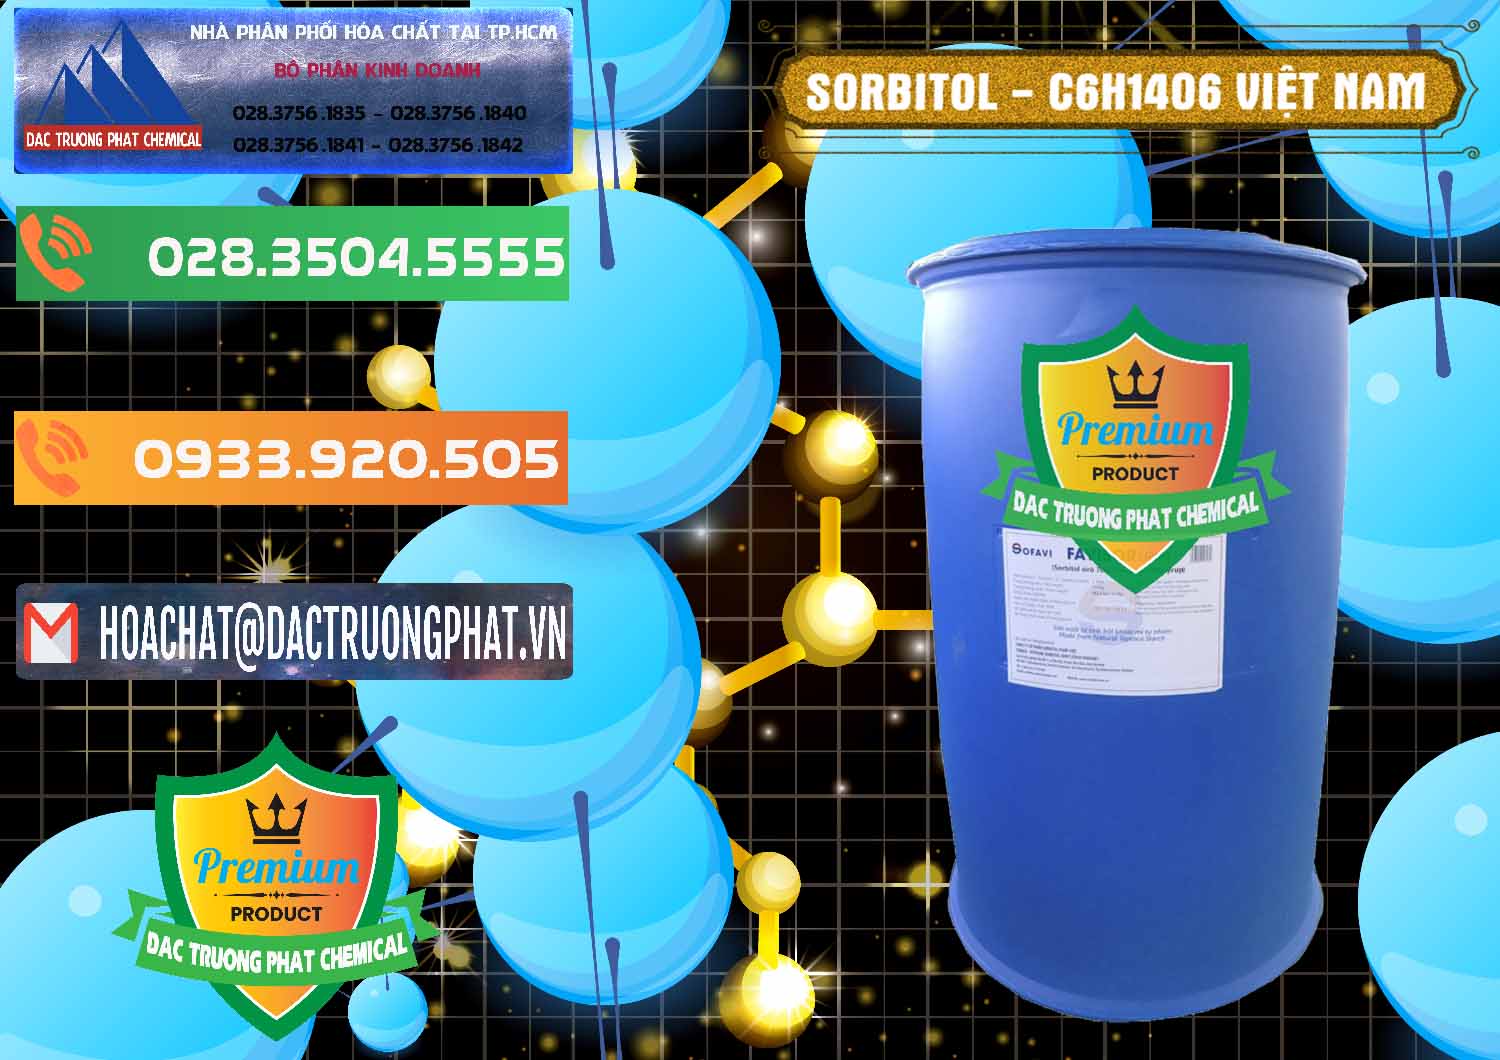 Chuyên cung ứng ( bán ) Sorbitol - C6H14O6 Lỏng 70% Food Grade Việt Nam - 0438 - Chuyên phân phối và cung cấp hóa chất tại TP.HCM - hoachatxulynuoc.com.vn